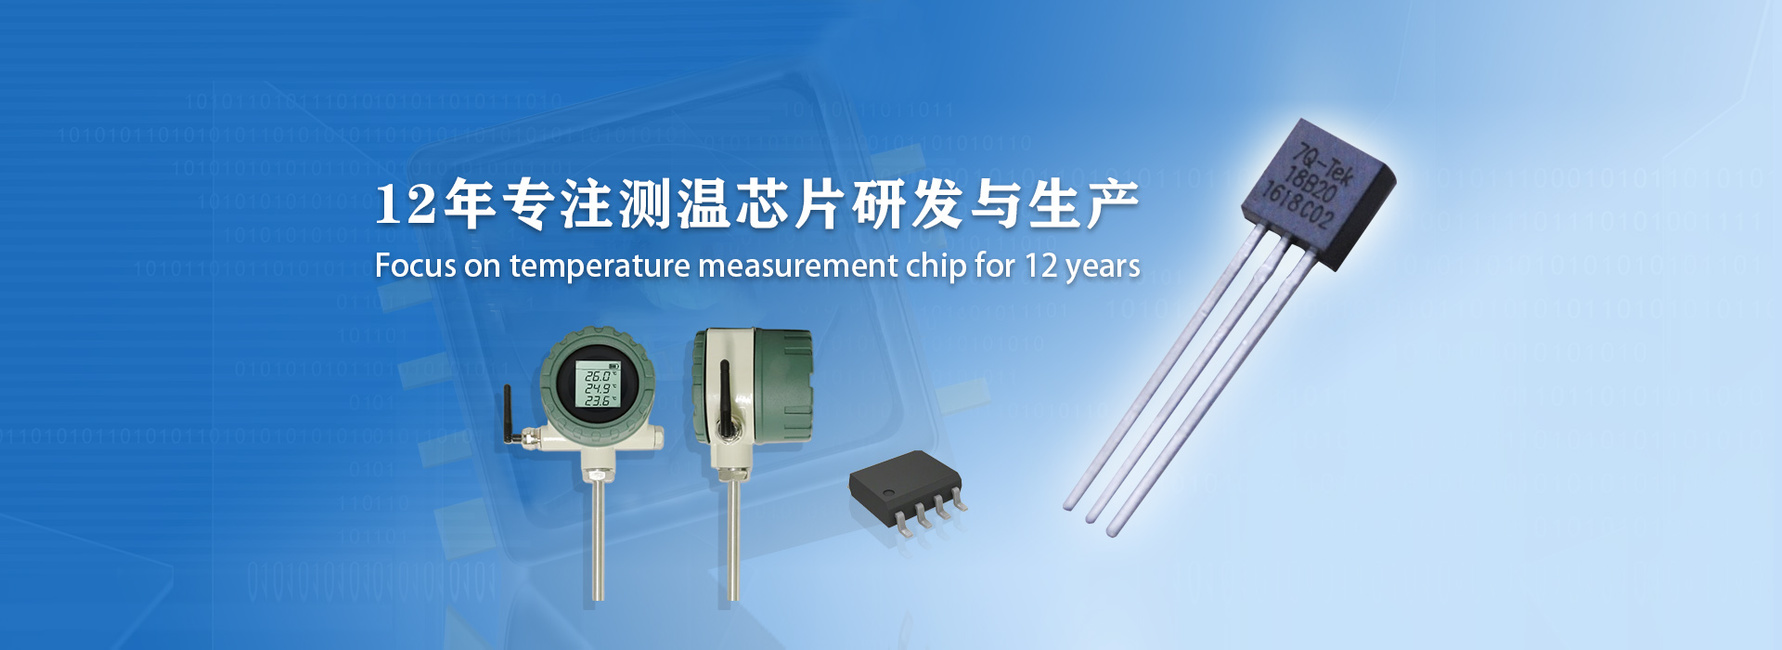 北京七芯12年专注测温芯片研发与生产